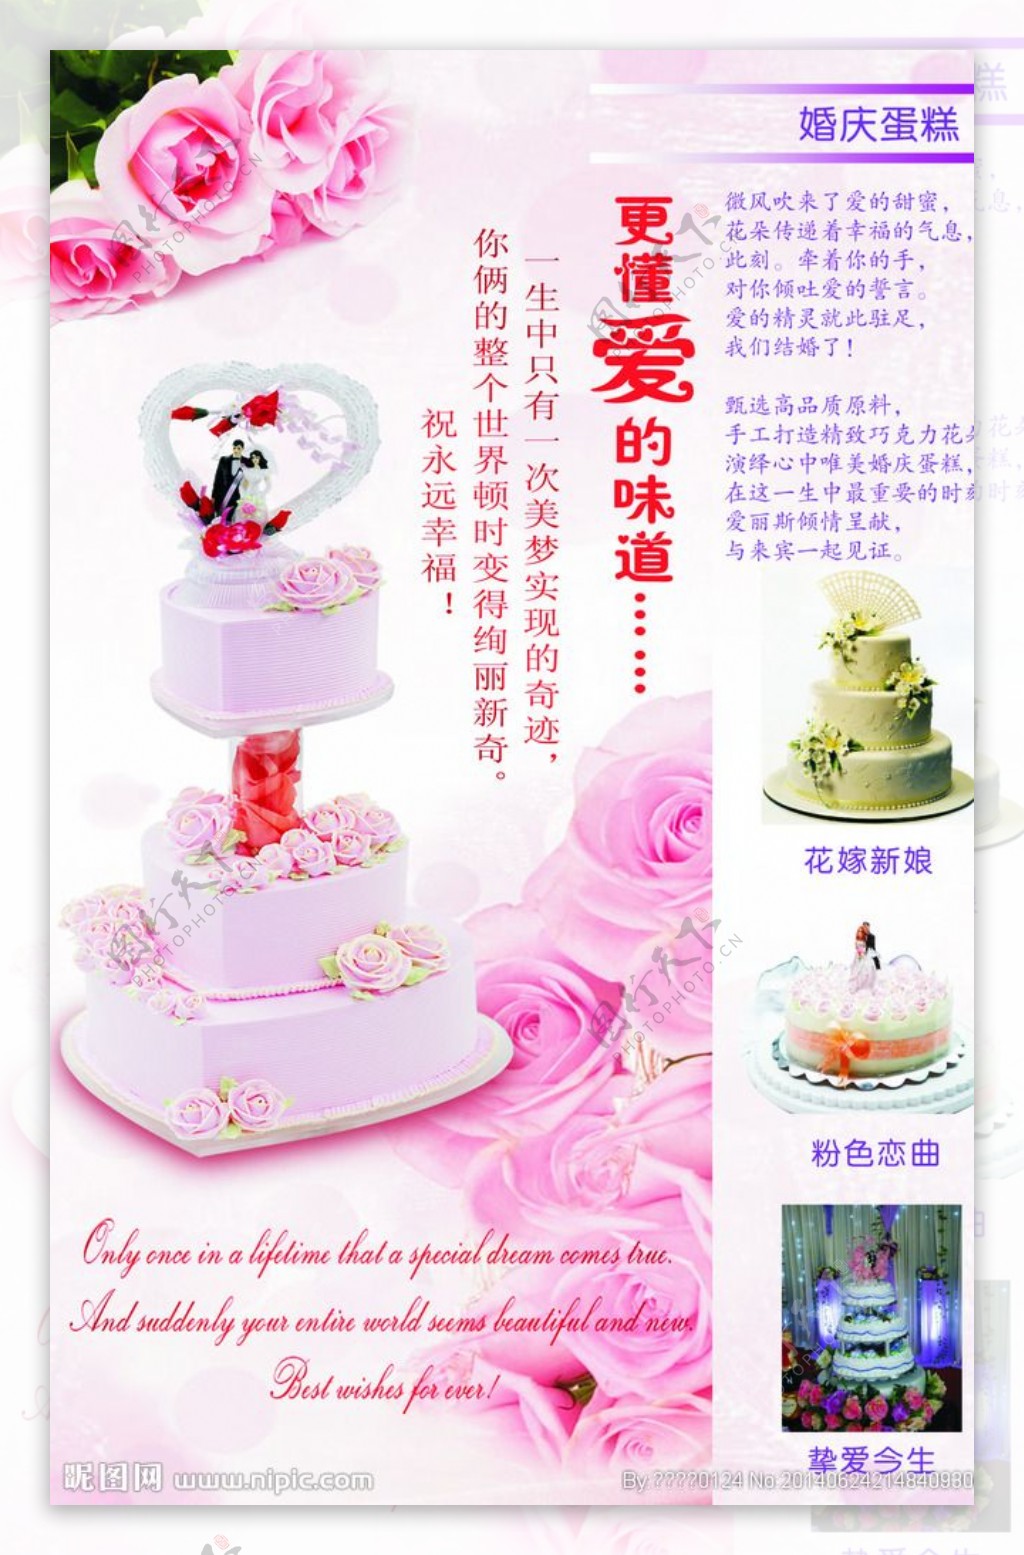 蛋糕店宣传画册图片